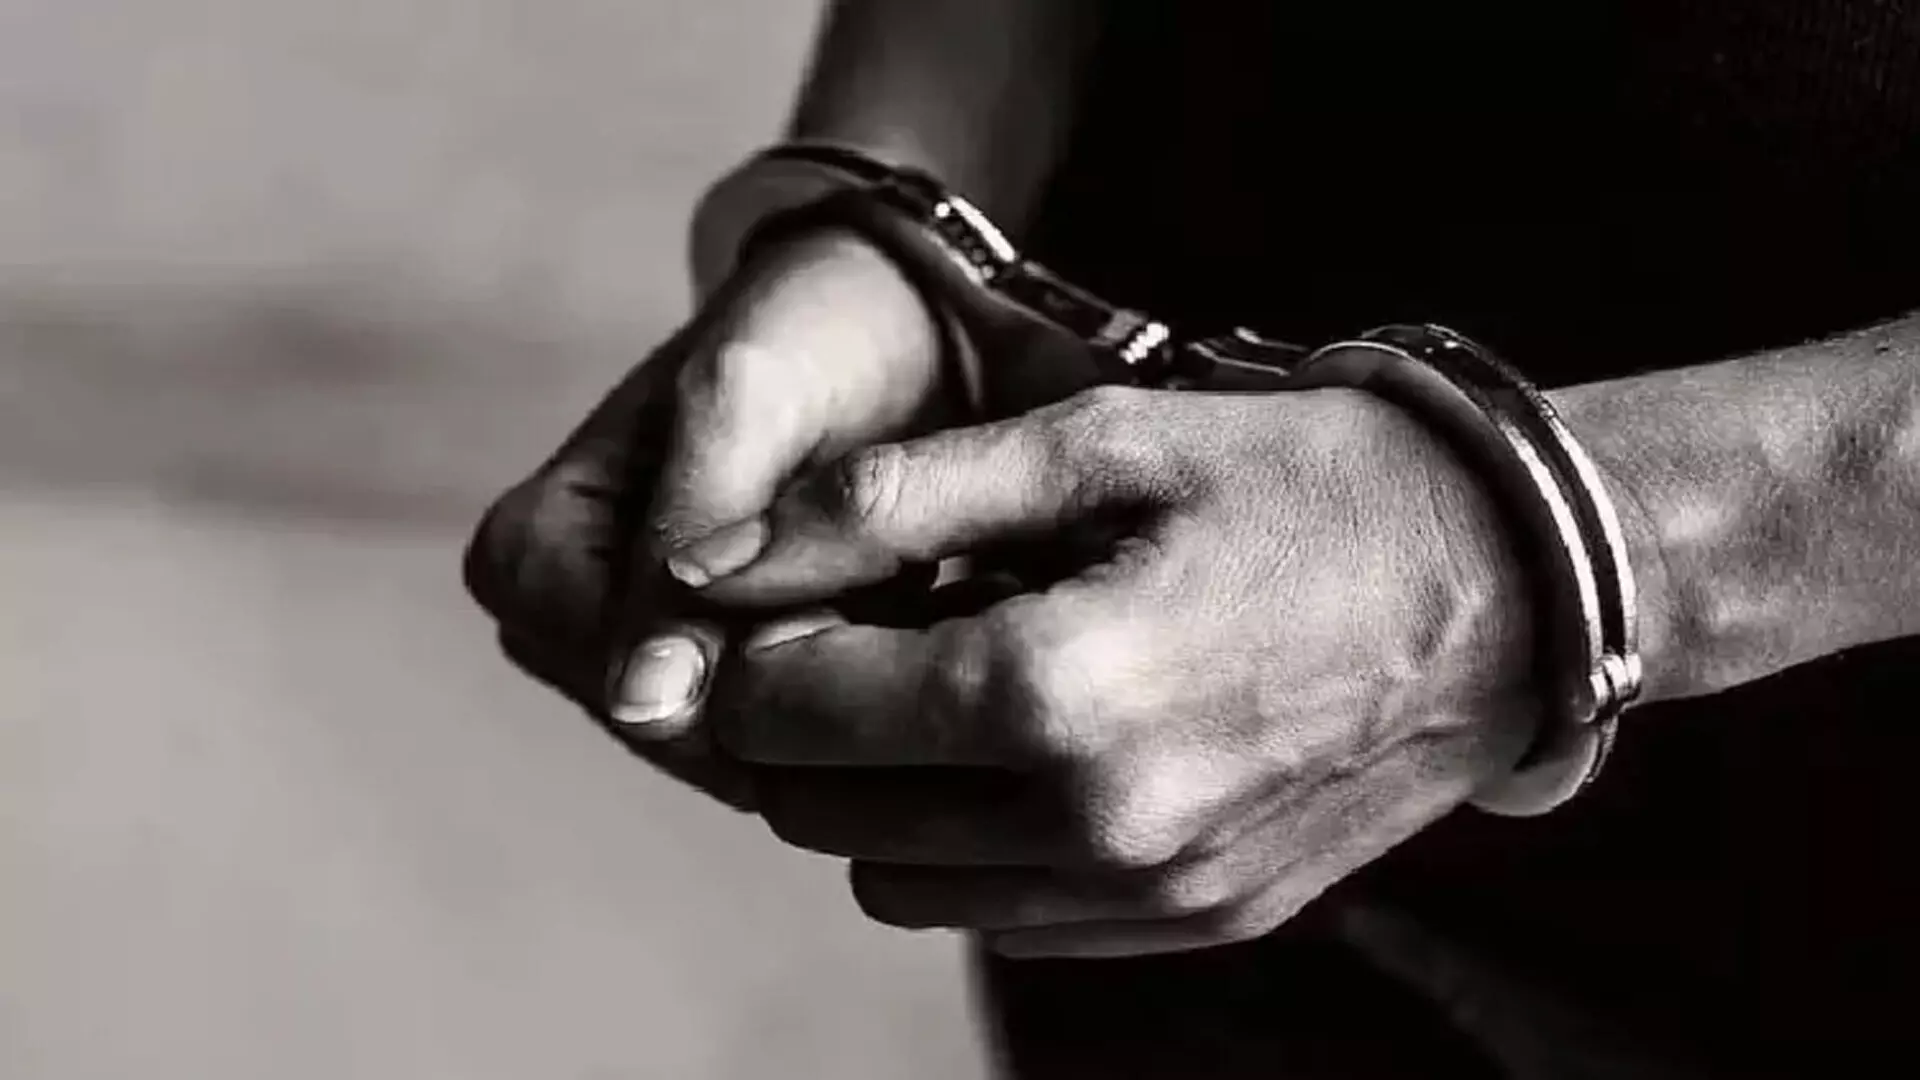 Chennai: केरल के 29 वर्षीय व्यक्ति को 50 लाख की धोखाधड़ी के आरोप में गिरफ्तार किया गया